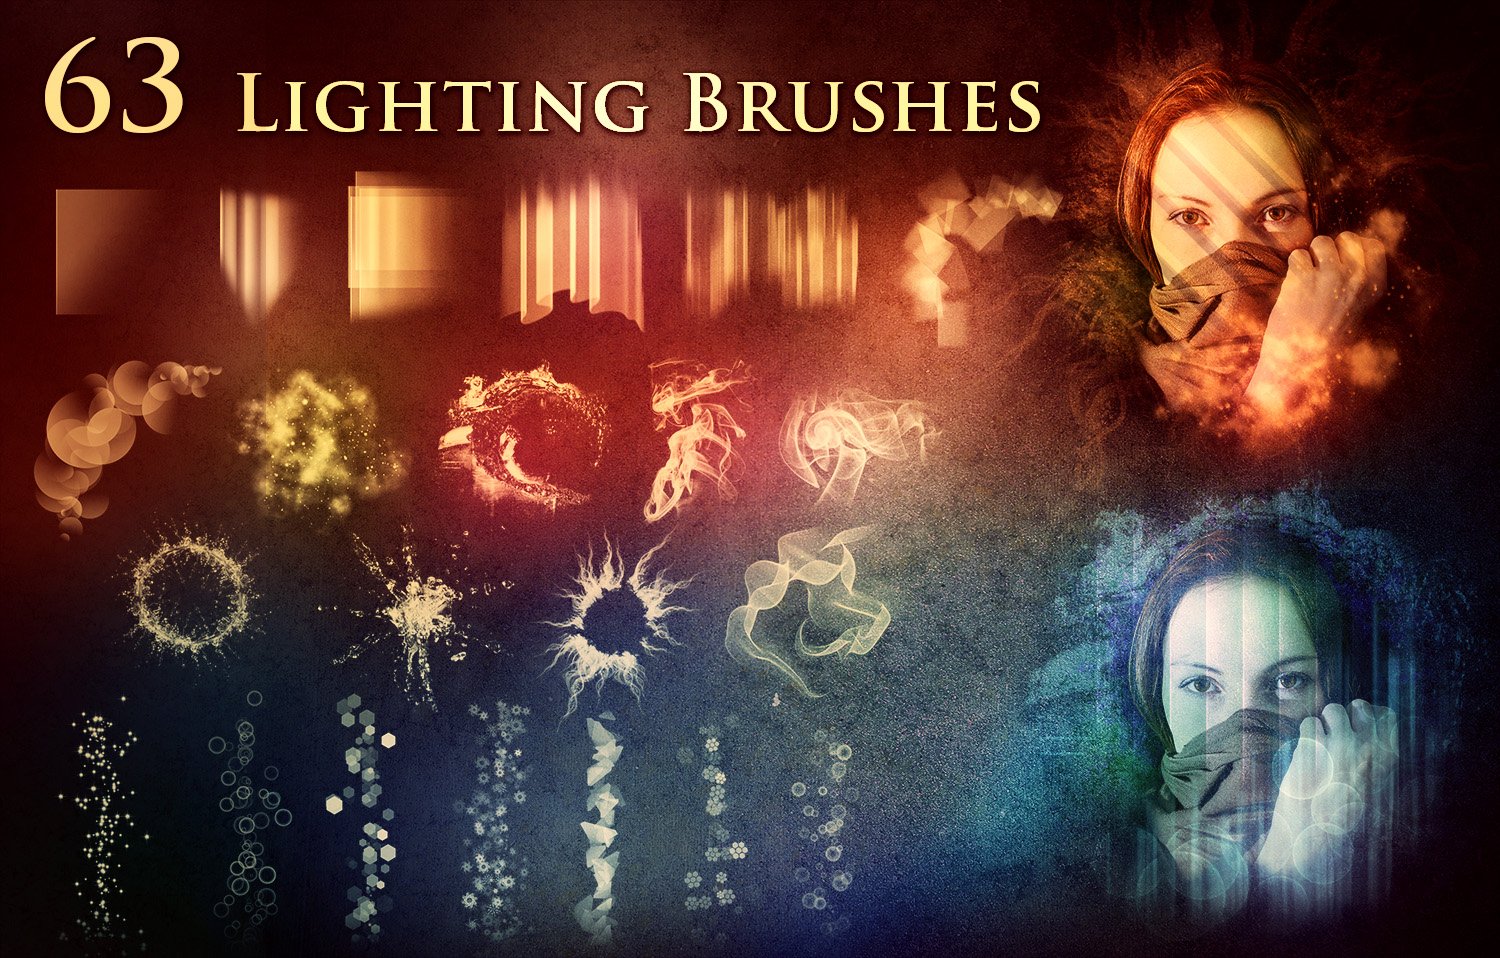 63 Lighting Brushescover image.